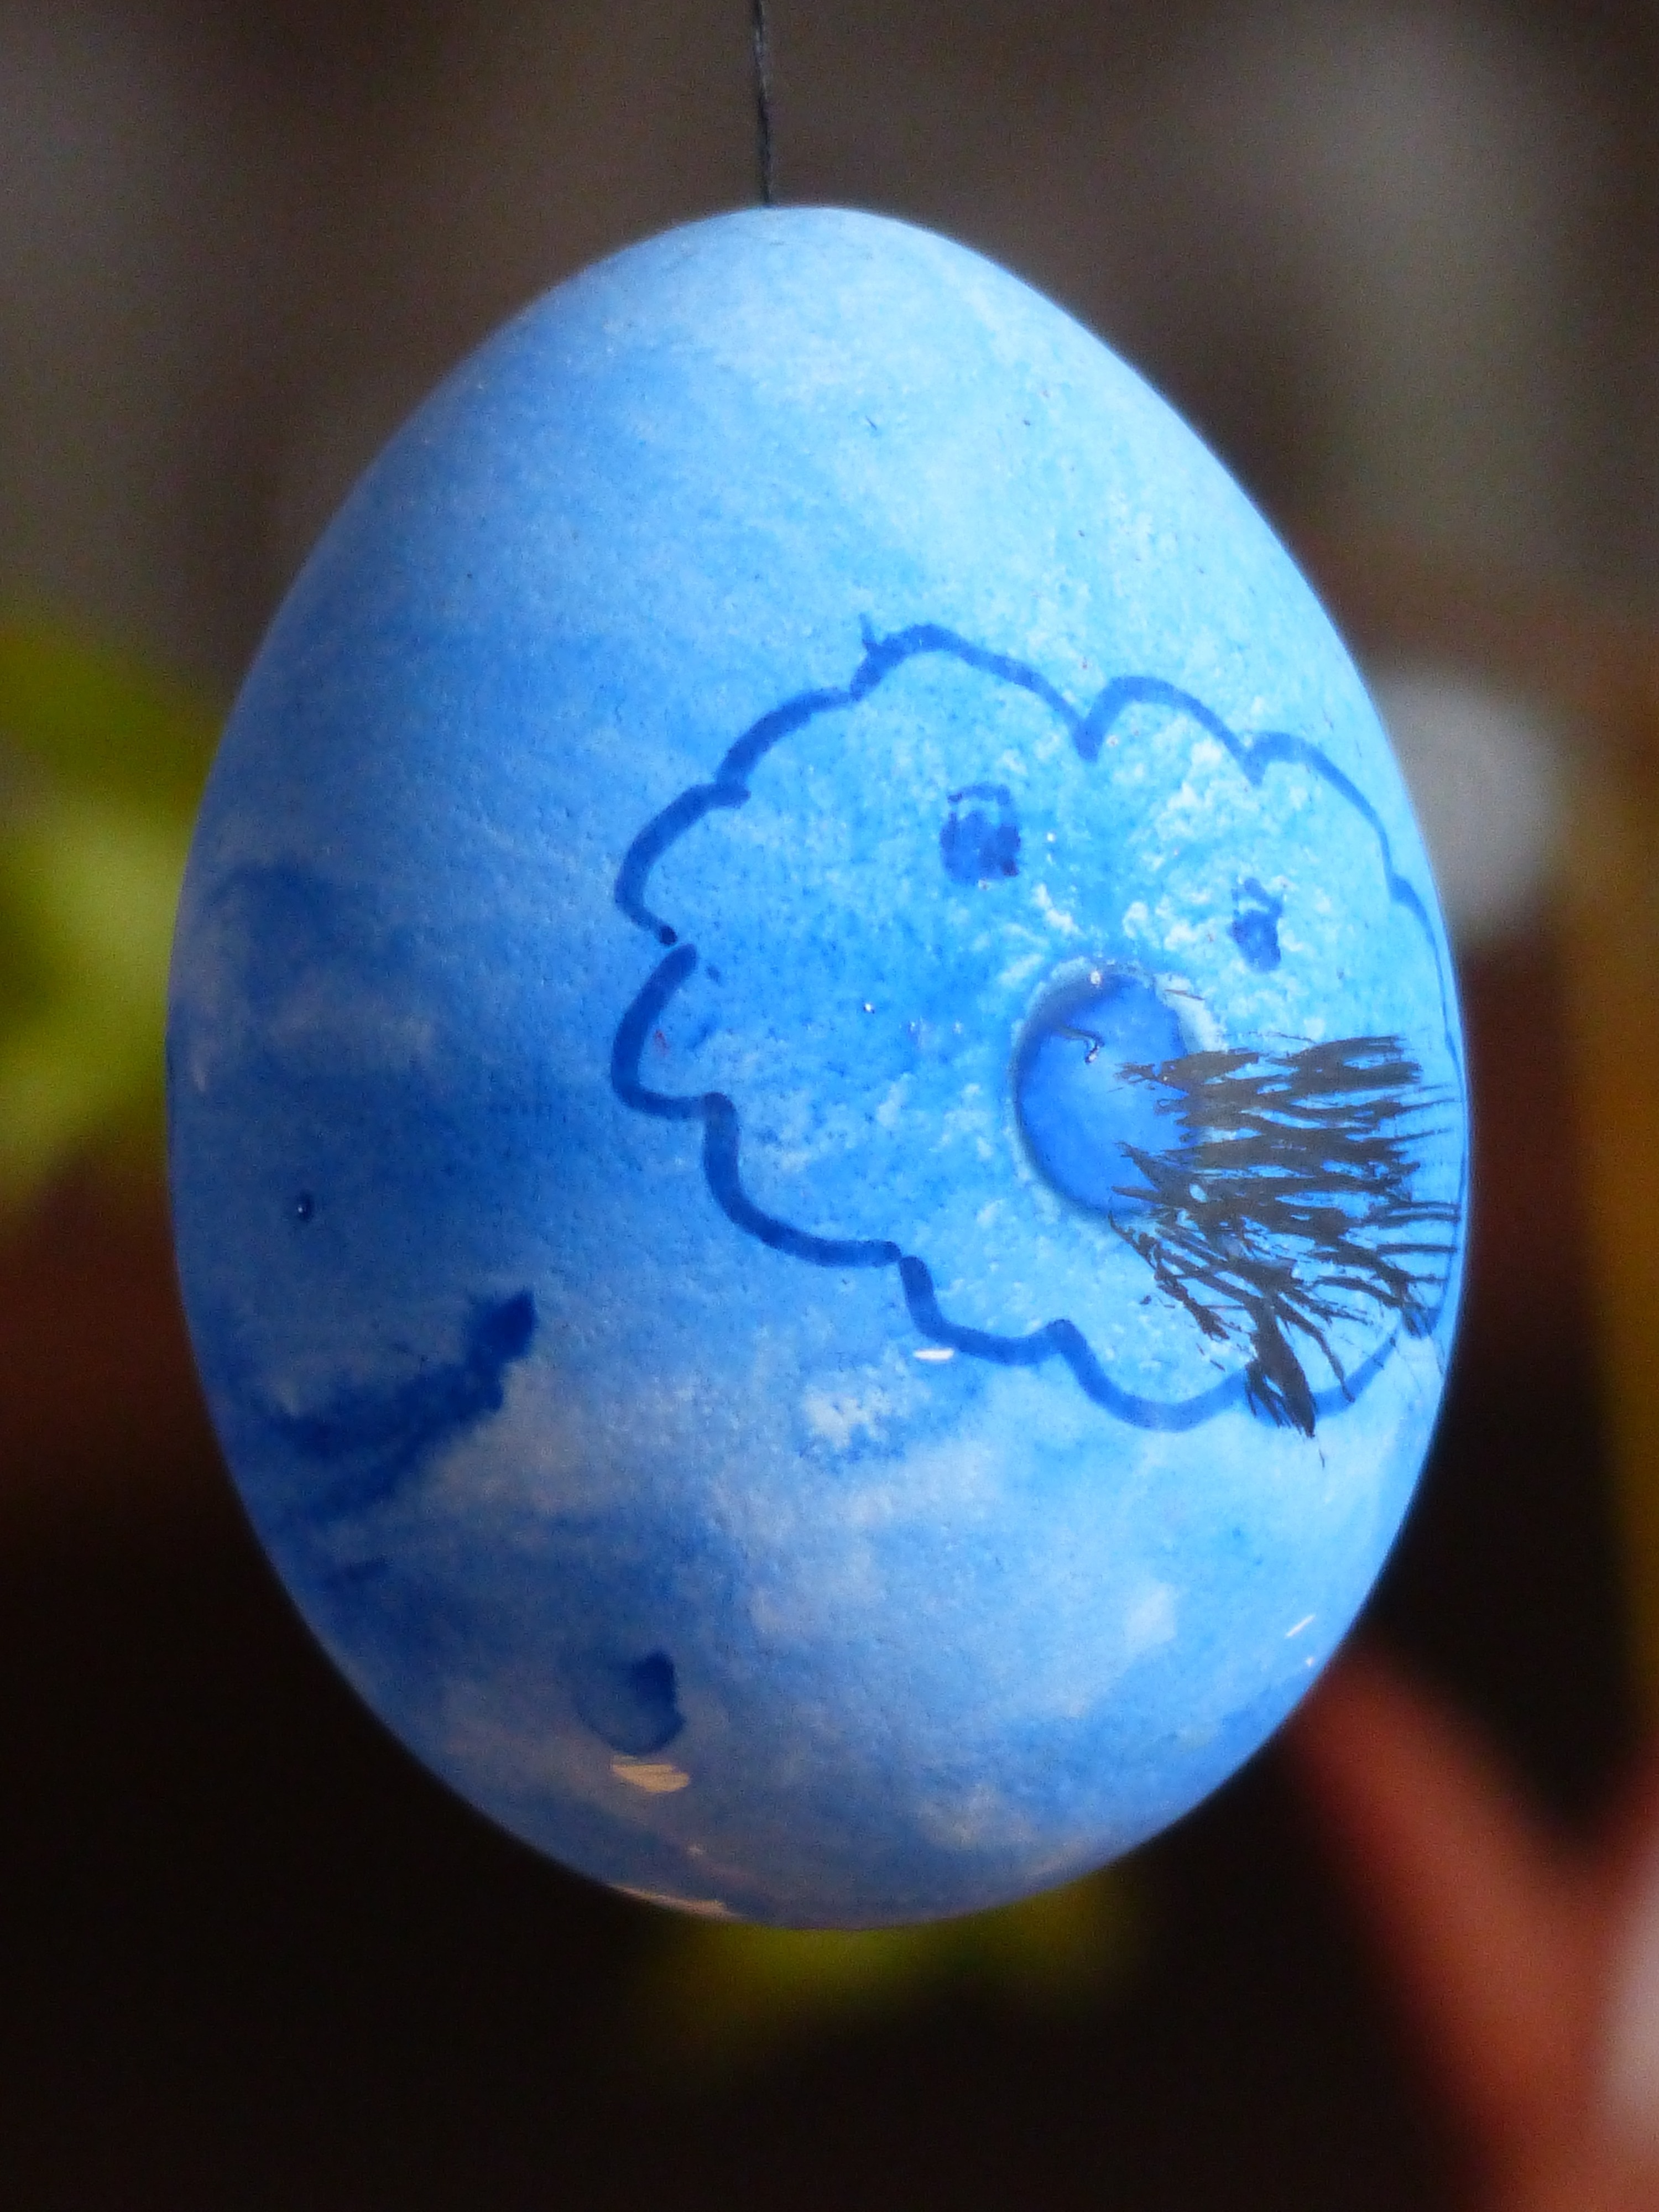 Easter, Egg, Easter Egg, Easter Eggs, blue, close-up